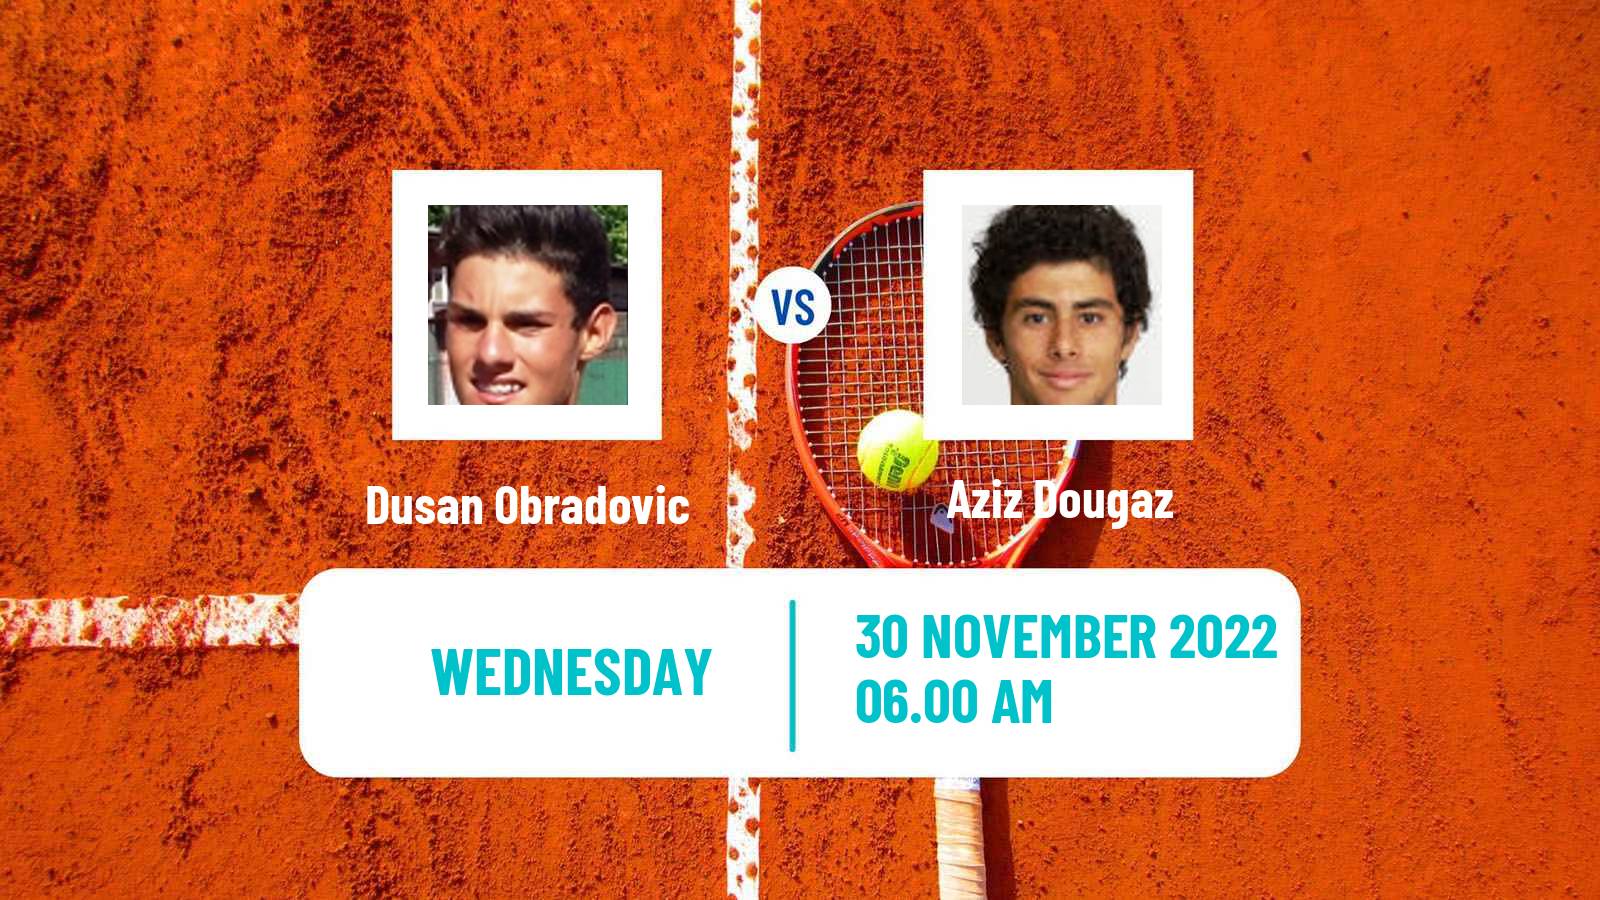 Tennis ITF Tournaments Dusan Obradovic - Aziz Dougaz